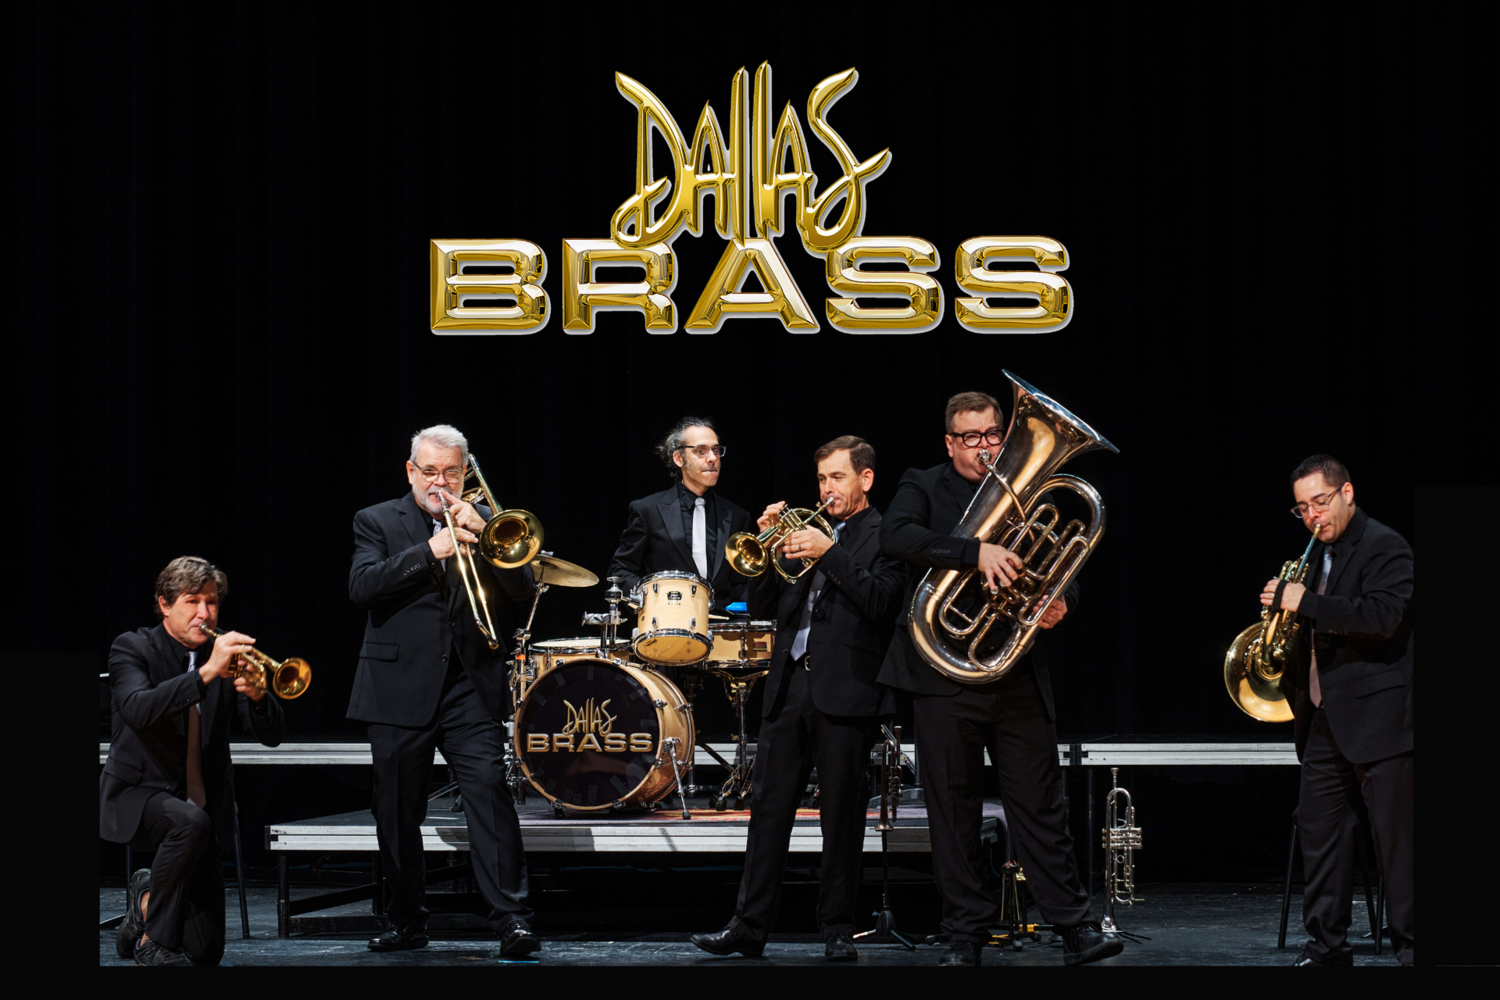 Dallas Brass